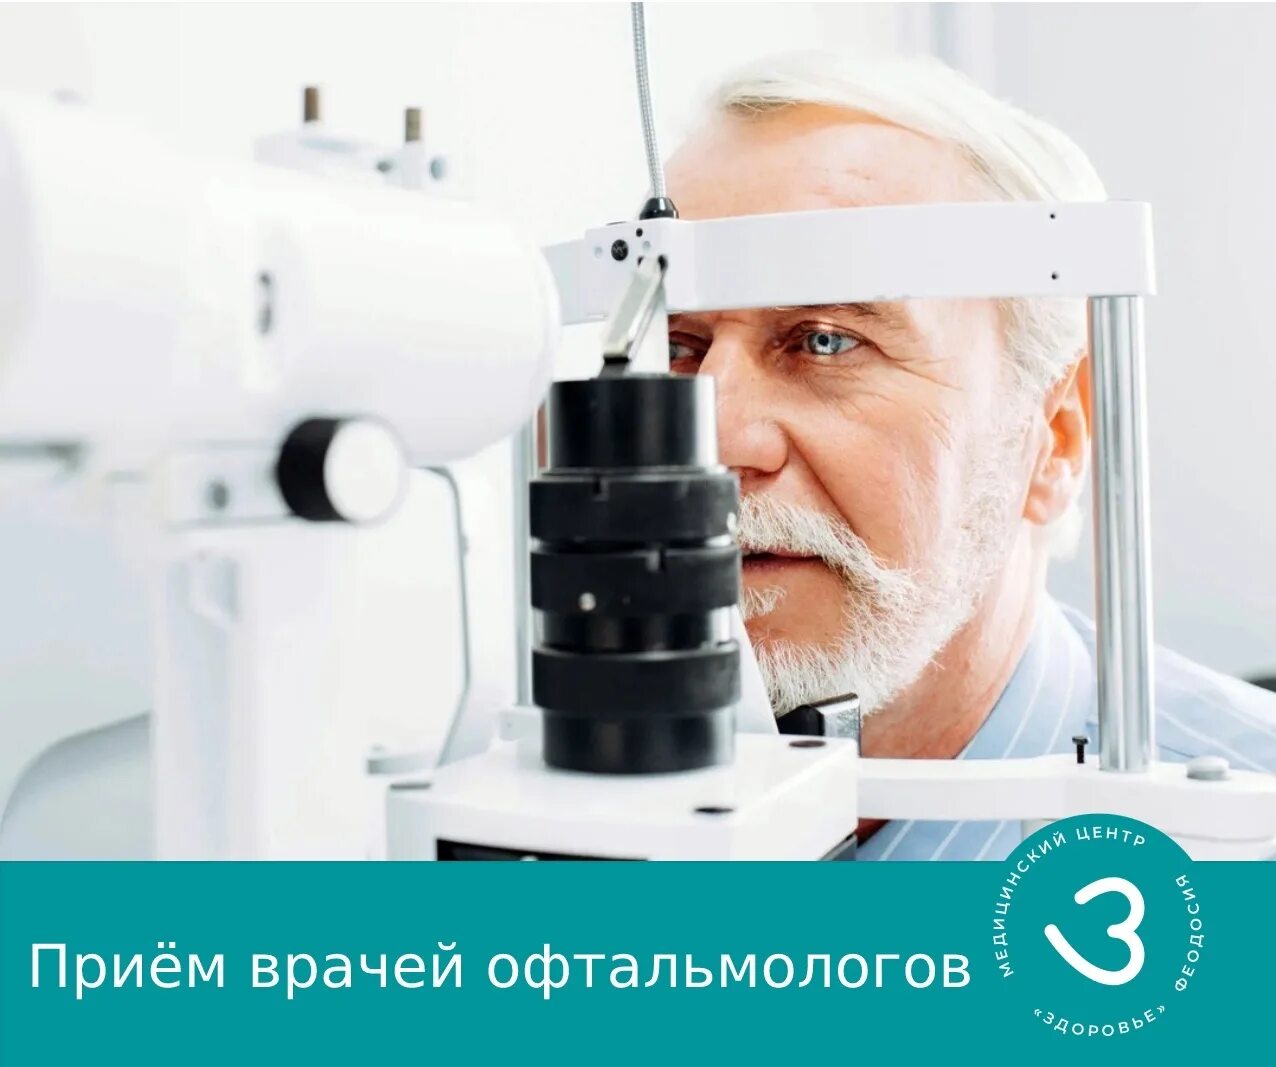 Лечение катаракты у пожилых людей операция. Диагностика катаракты. Профессиональные катаракты. Офтальмолог.